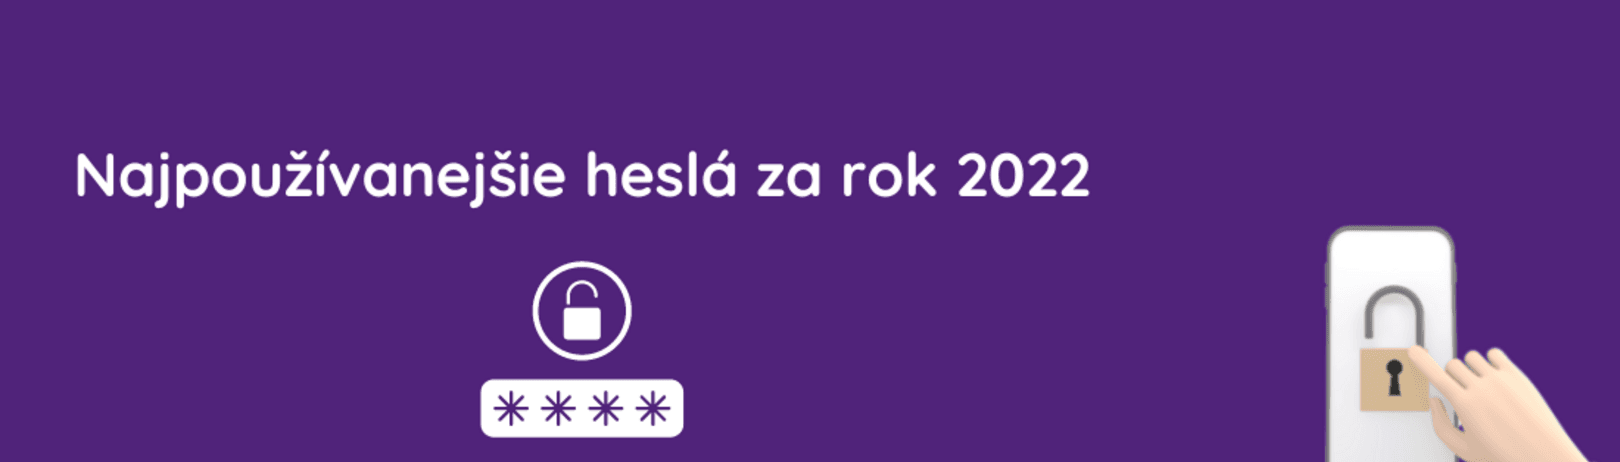 Najpoužívanejšie heslá za rok 2022